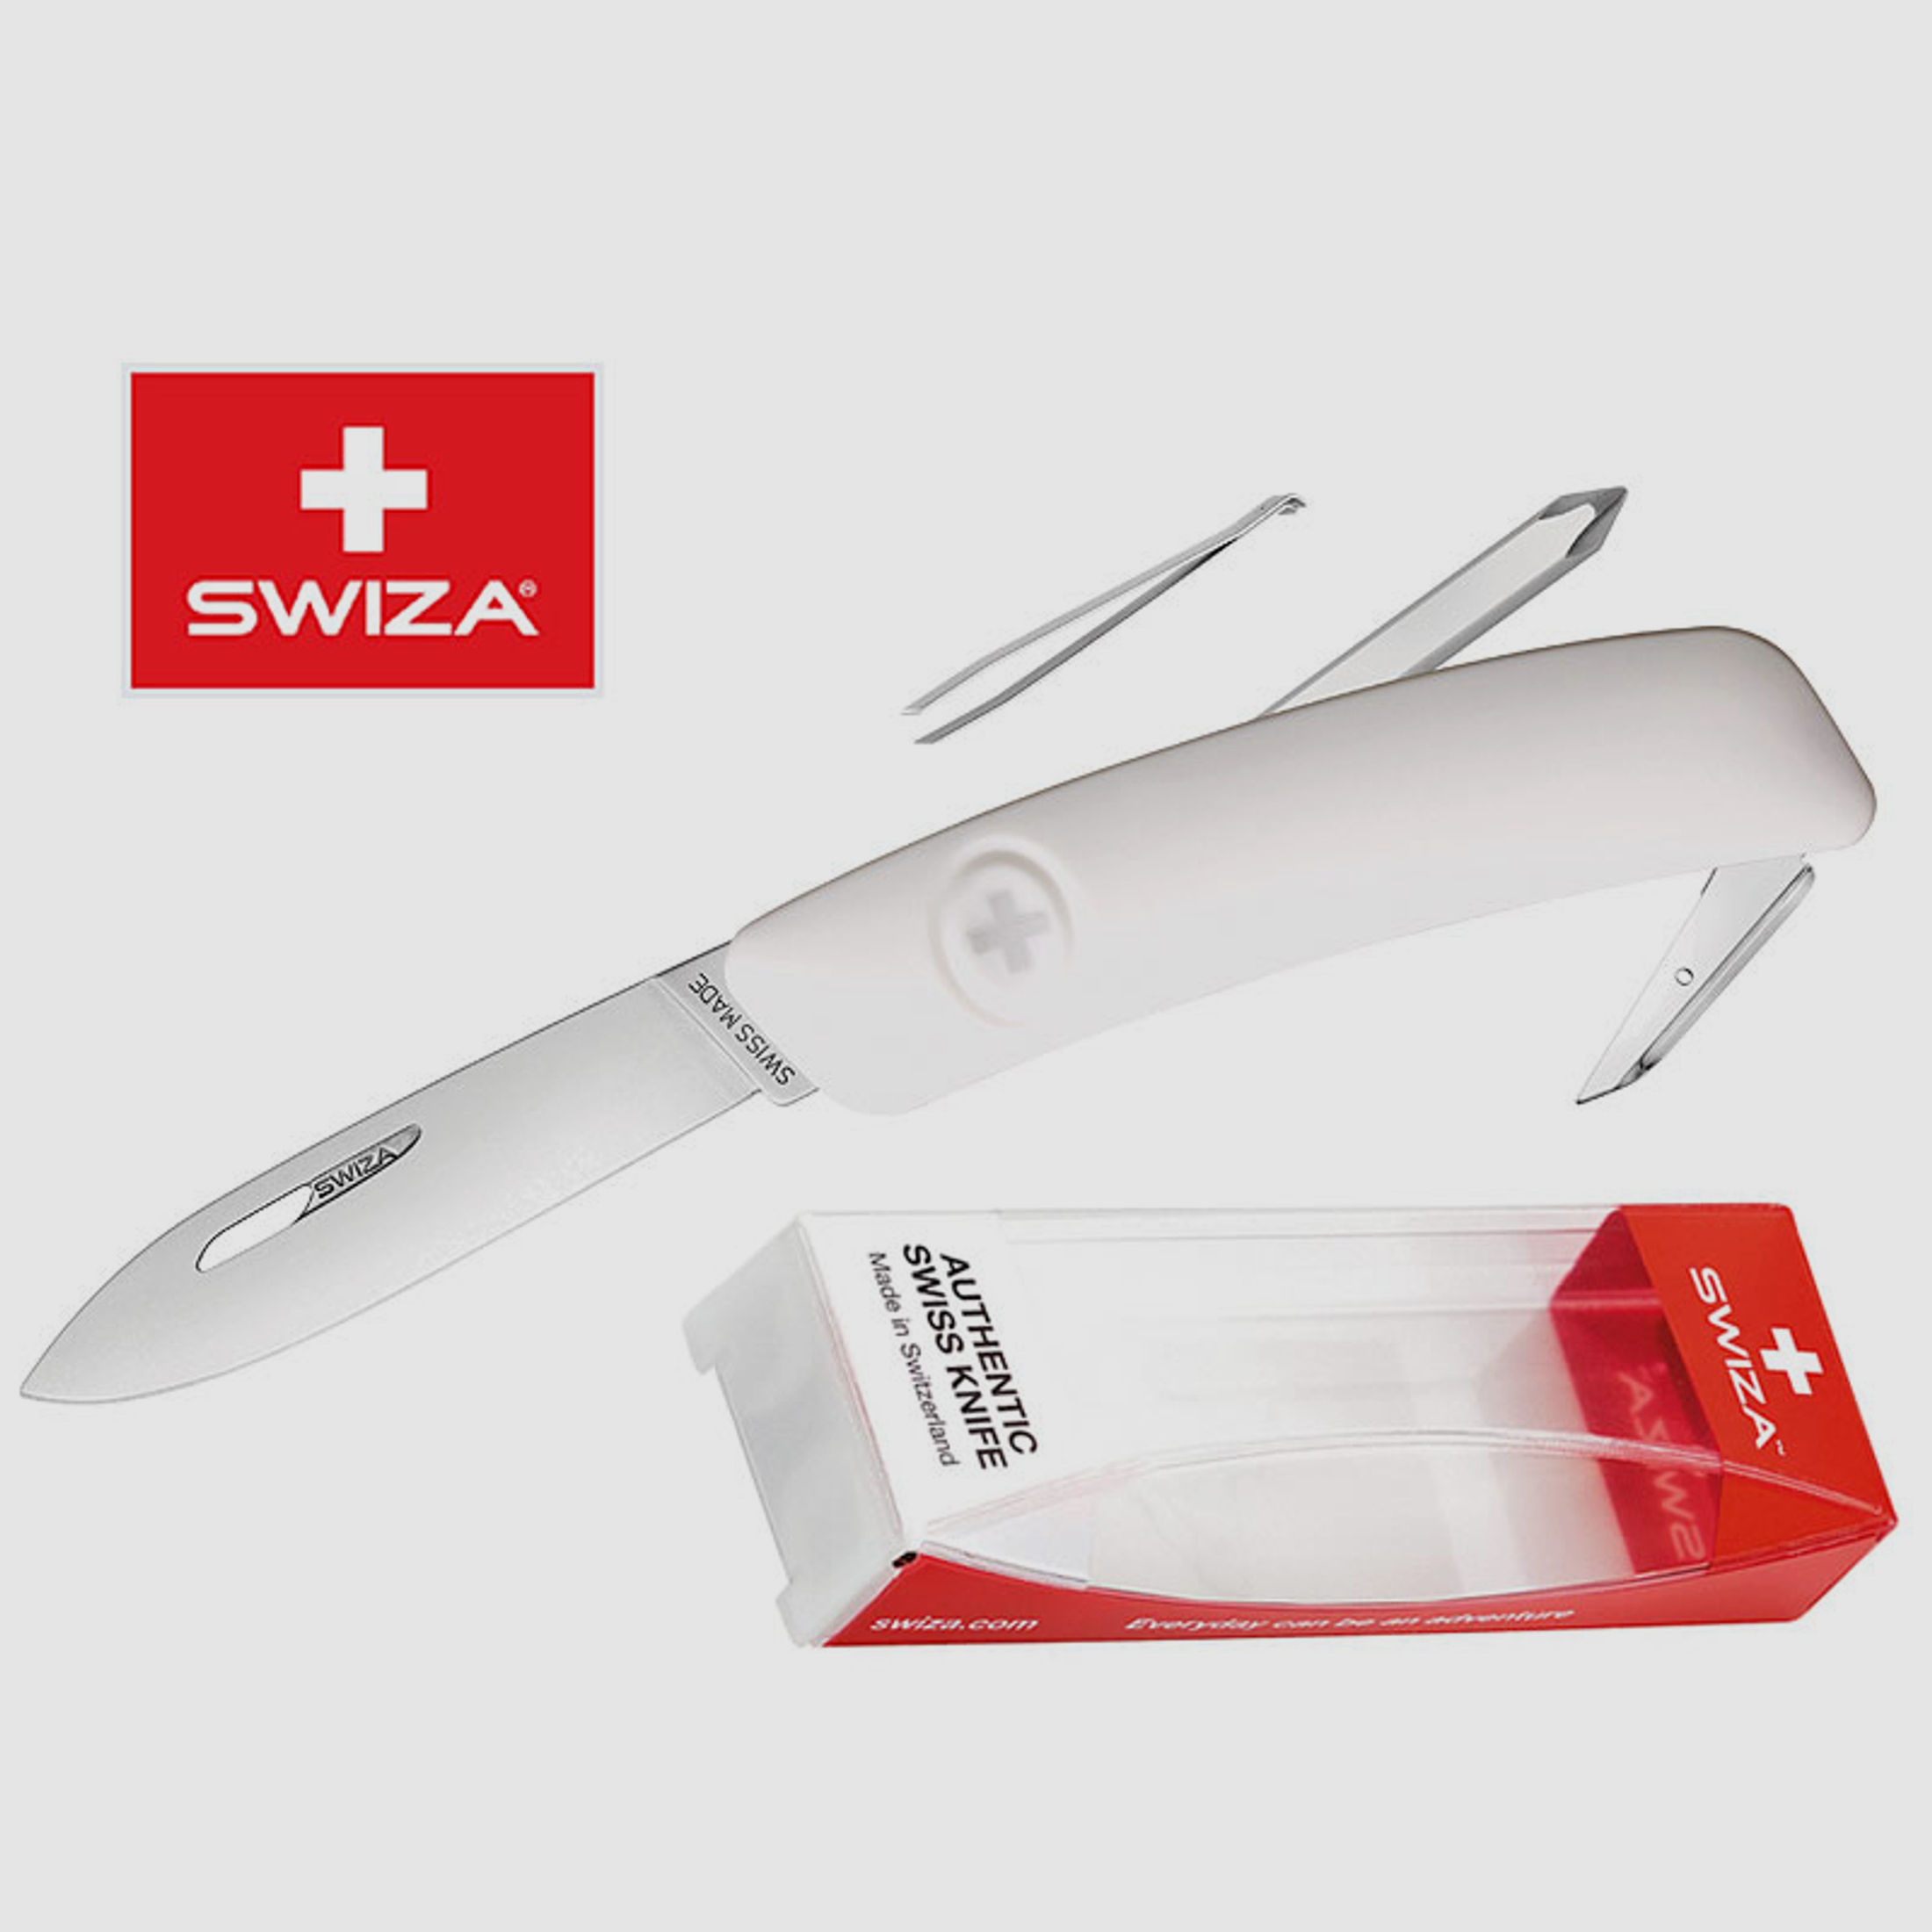 SWIZA Schweizer Messer D02, weiss, Edelstahl 440, 6 Funktionen, Schraubendreher, Multi-Tool